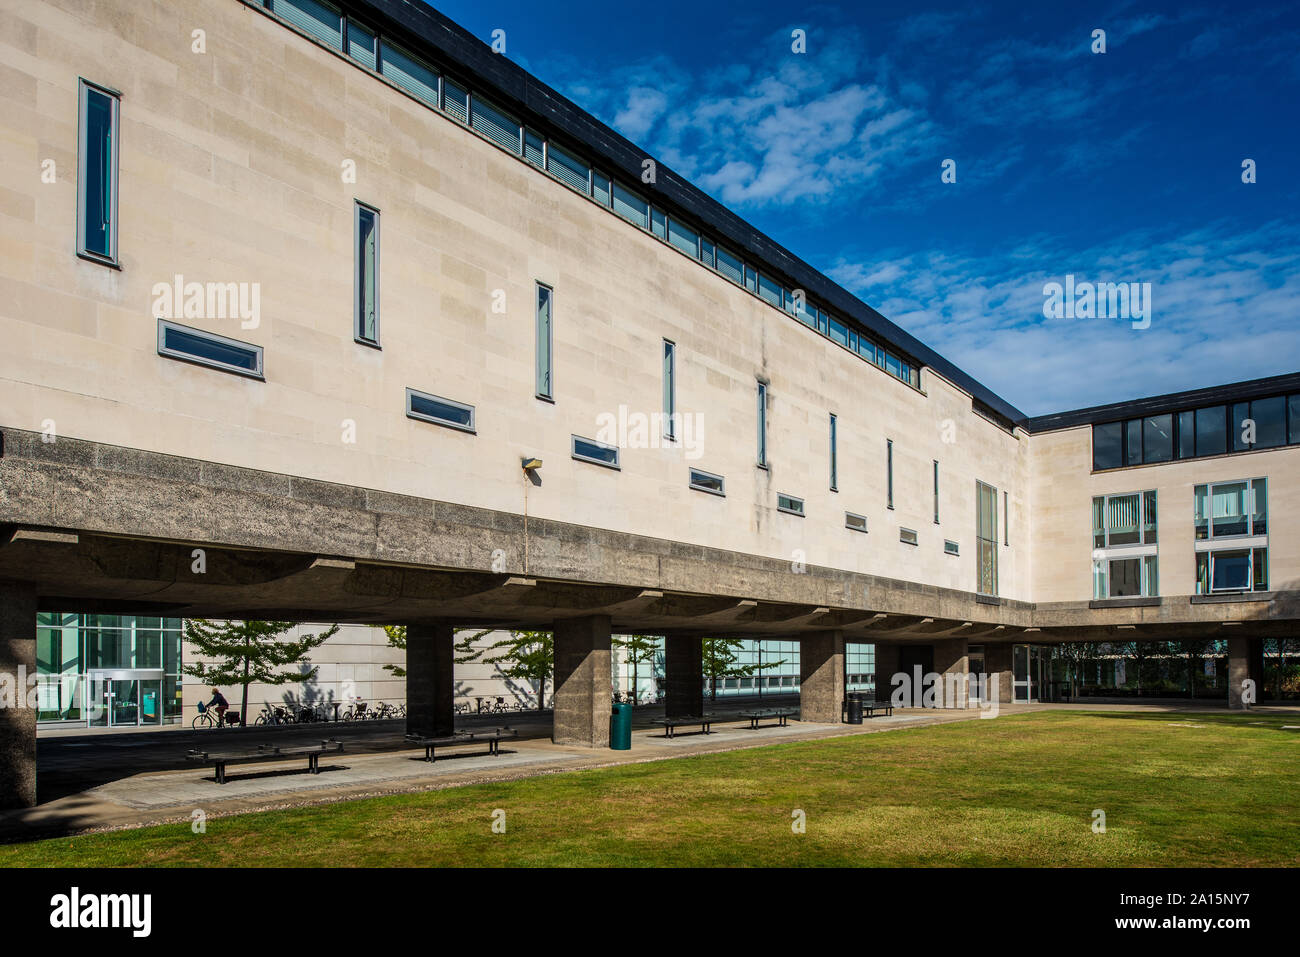 Bâtiment de la faculté surélevée du site de l'université de Cambridge Sidgwick. Architectes Casson, Condor & Partners 1961 (Sir Hugh Casson). Architecture de Cambridge. Banque D'Images